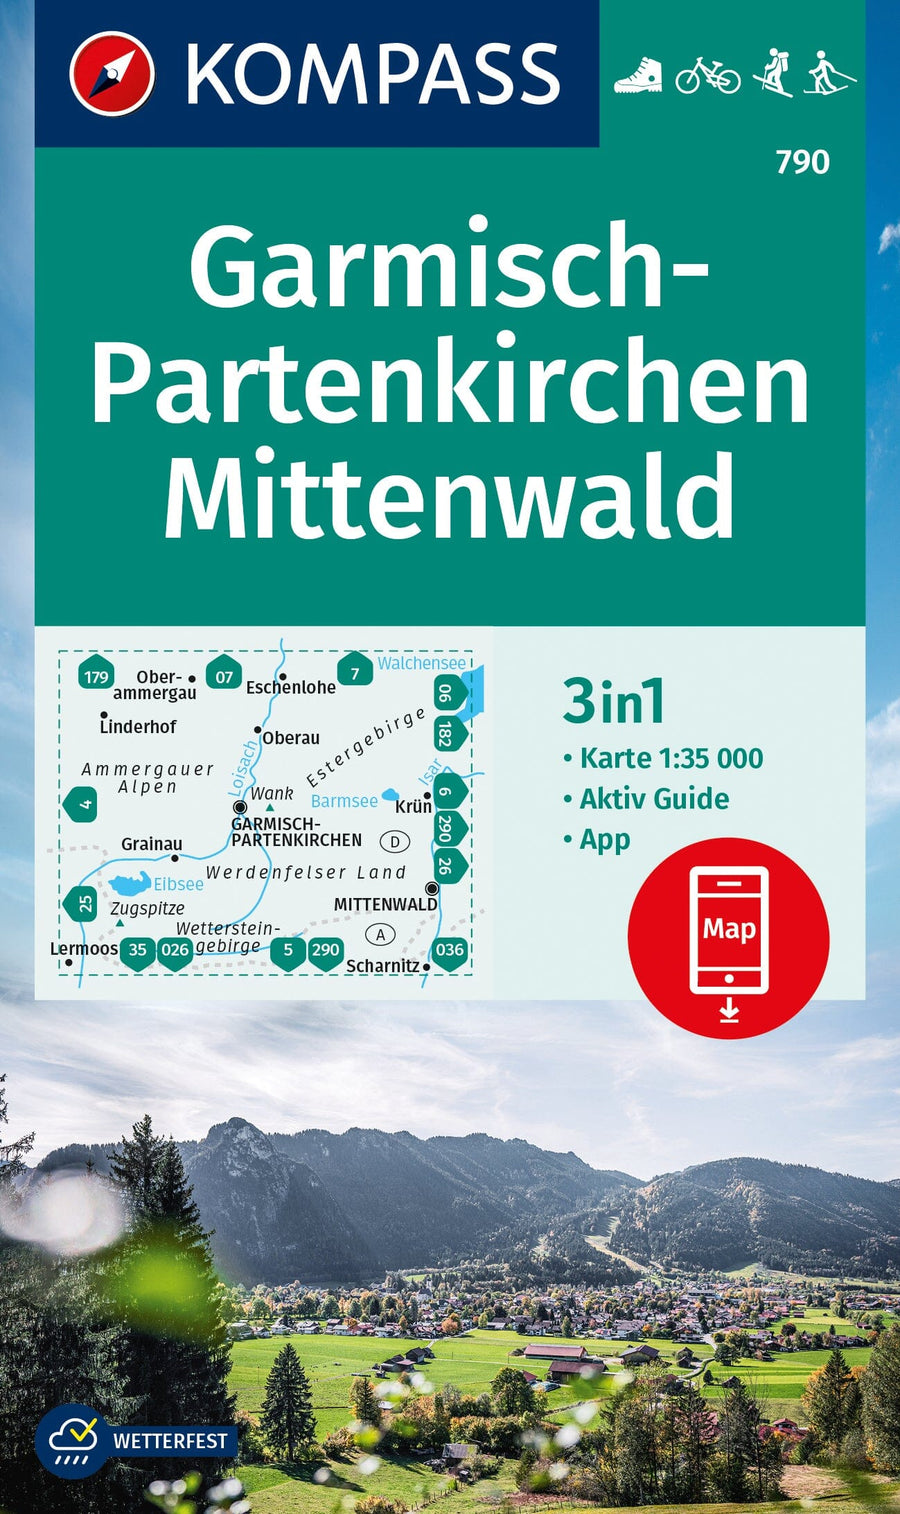 https://mapscompany.eu/cdn/shop/products/carte-de-randonnee-ndeg-790-garmisch-partenkirchen-mittenwald-guide-allemagne-kompass-carte-pliee-kompass-906240.jpg?v=1684086974&width=900